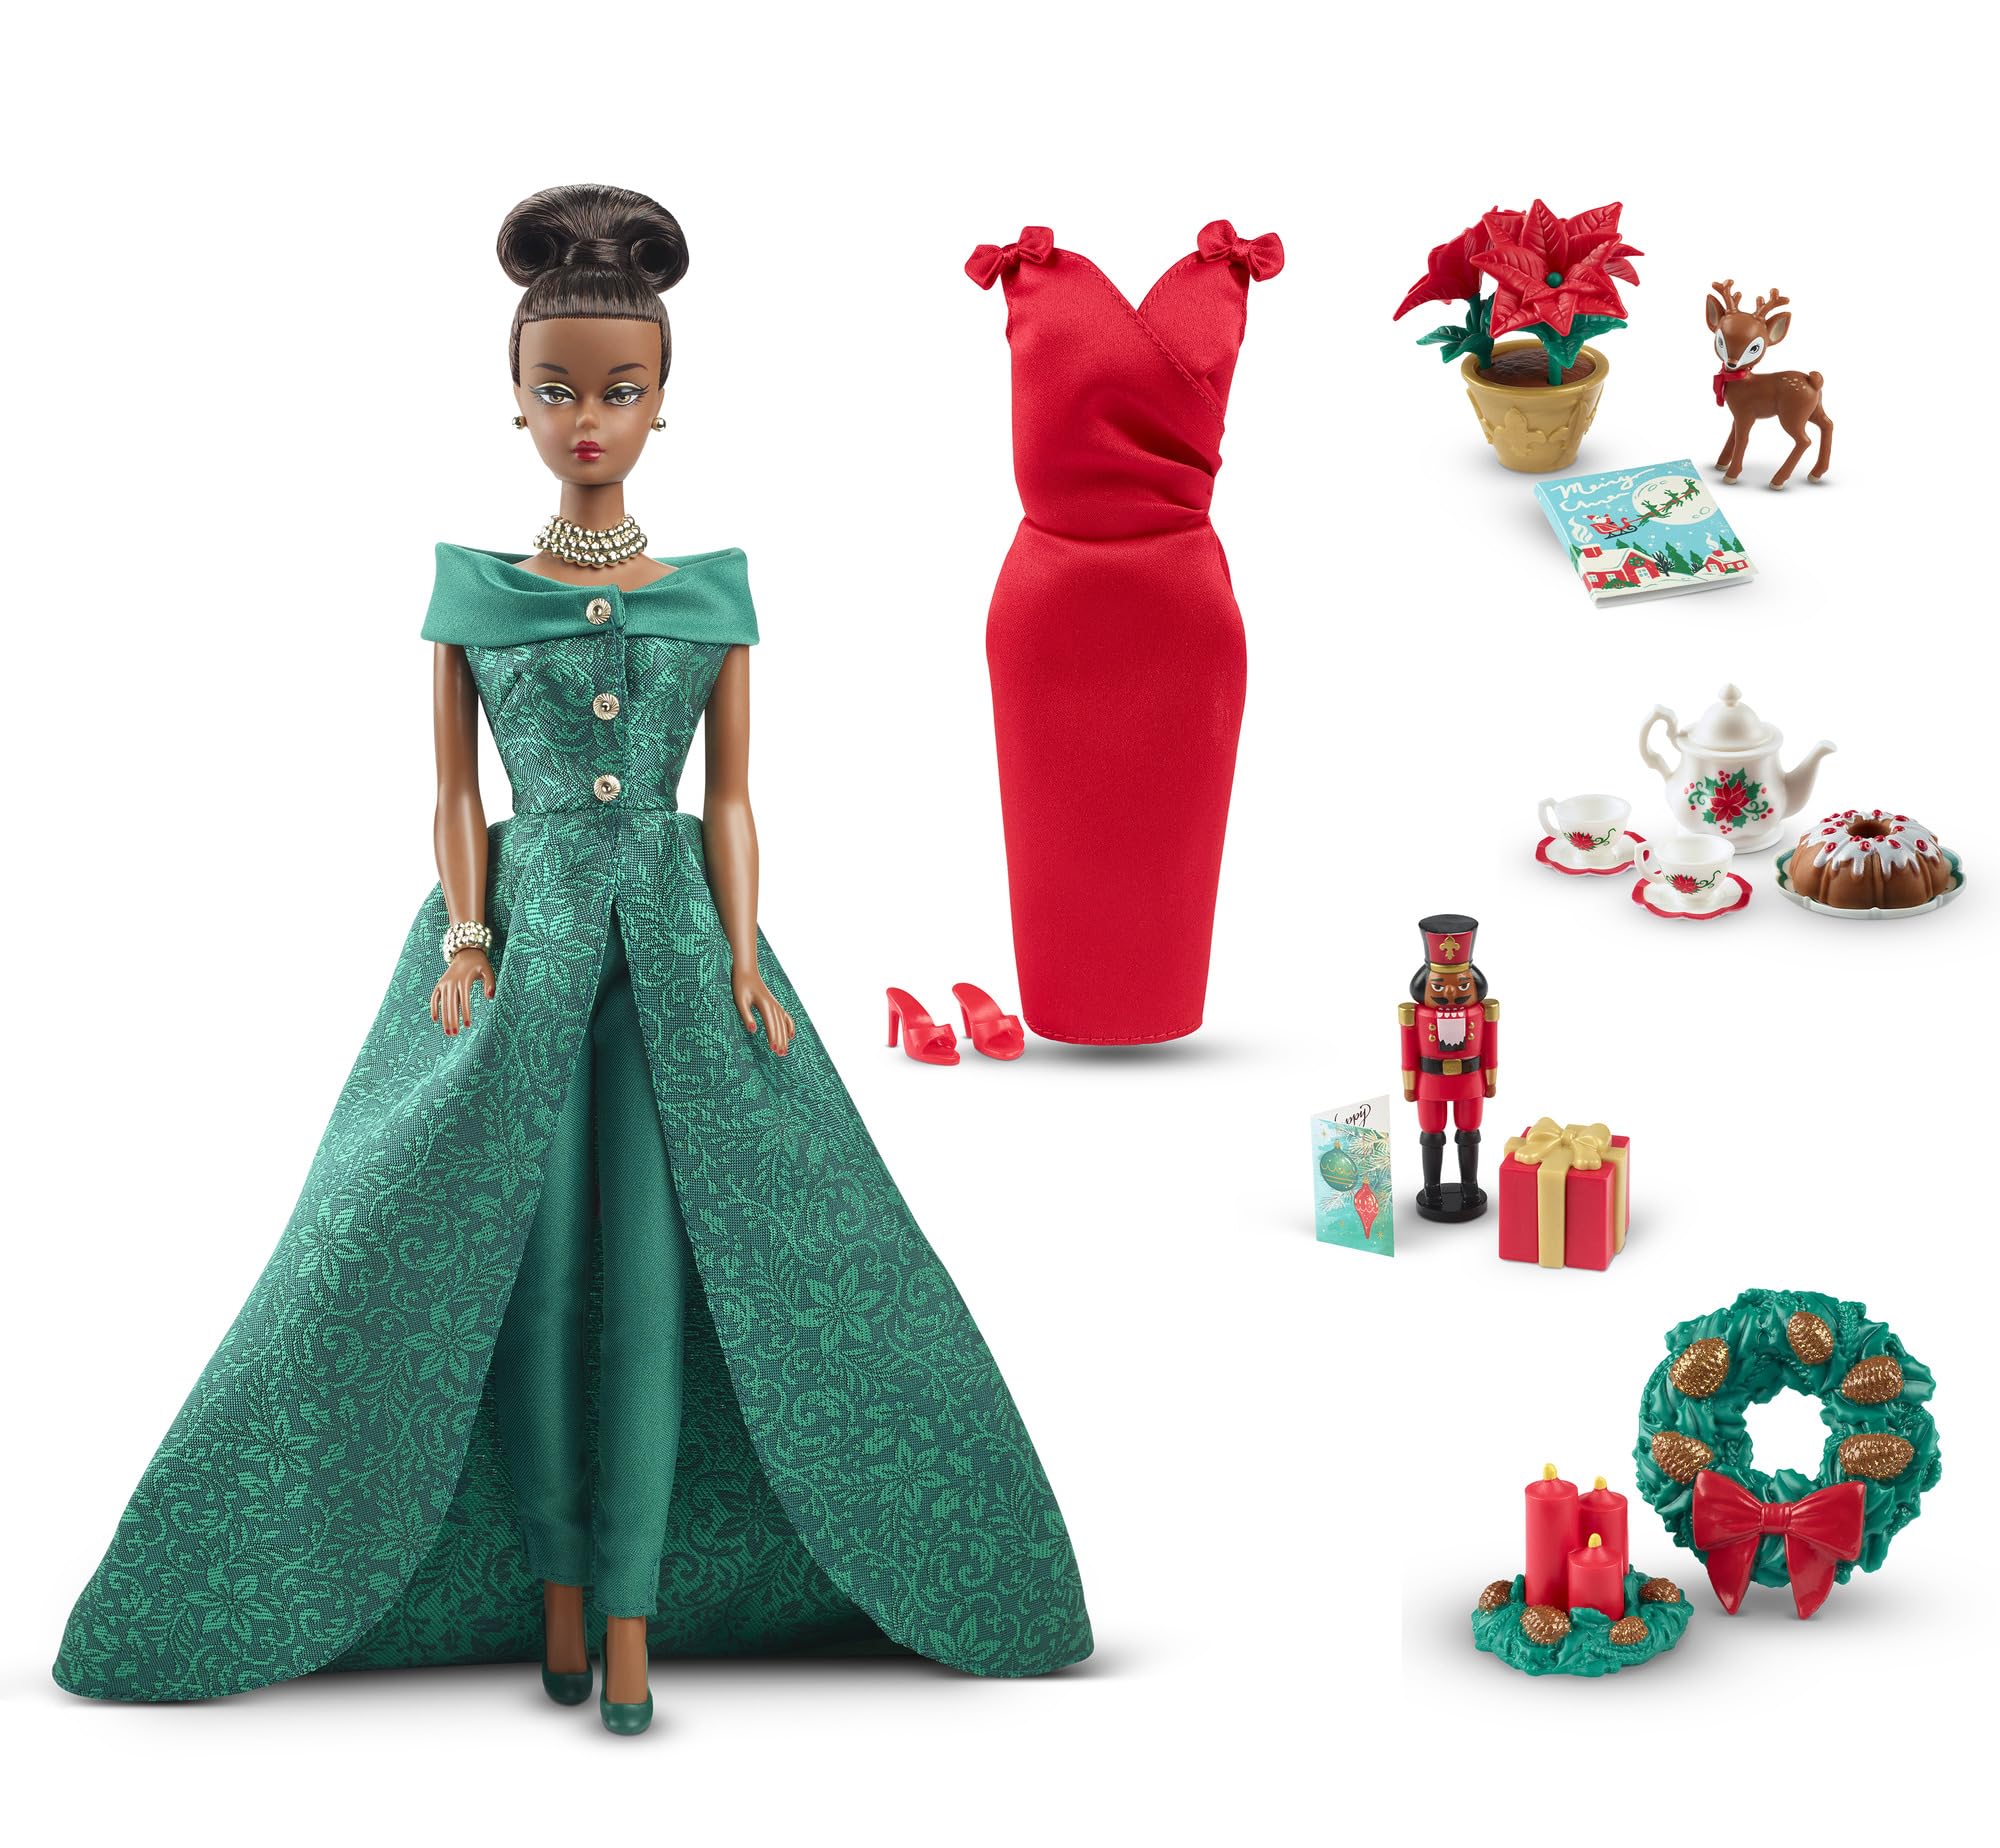 バービー(Barbie) 12 デイズ クリスマスカレンダー 2着せ替え人形・ドール シグネチャーGOLD 大人向け(18歳以上） HJX13画像